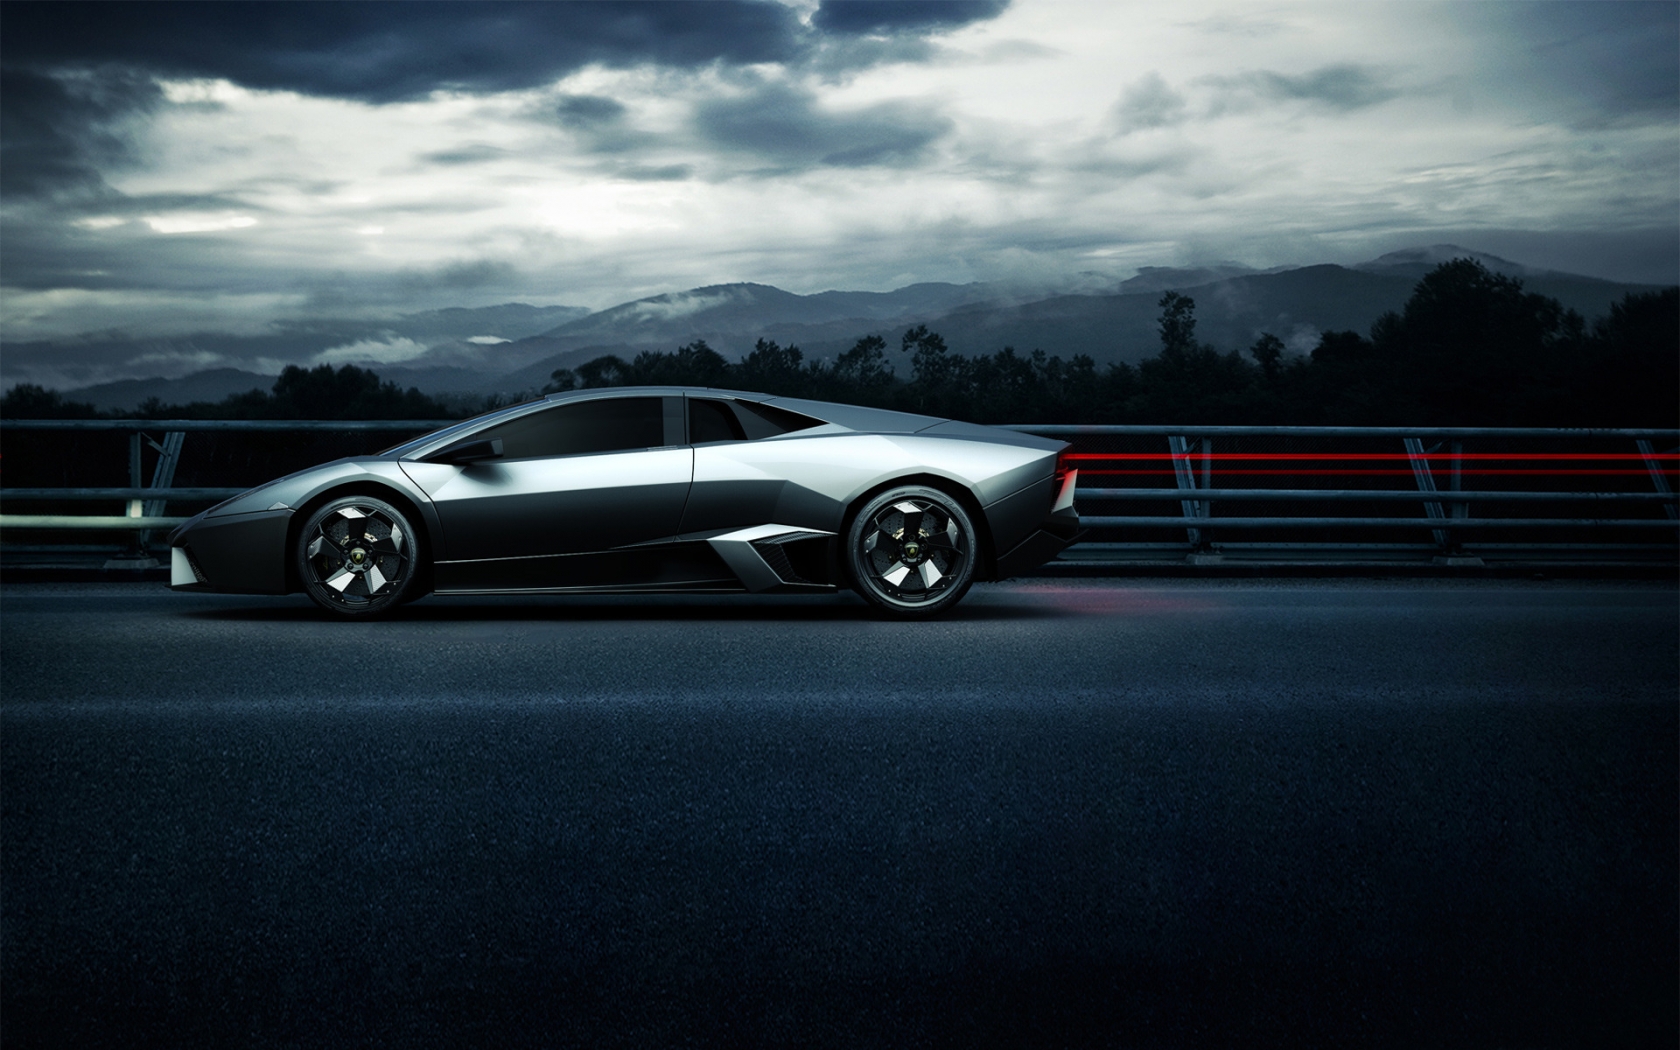 Lamborghini Sport Side Angle for 1680 x 1050 widescreen resolution